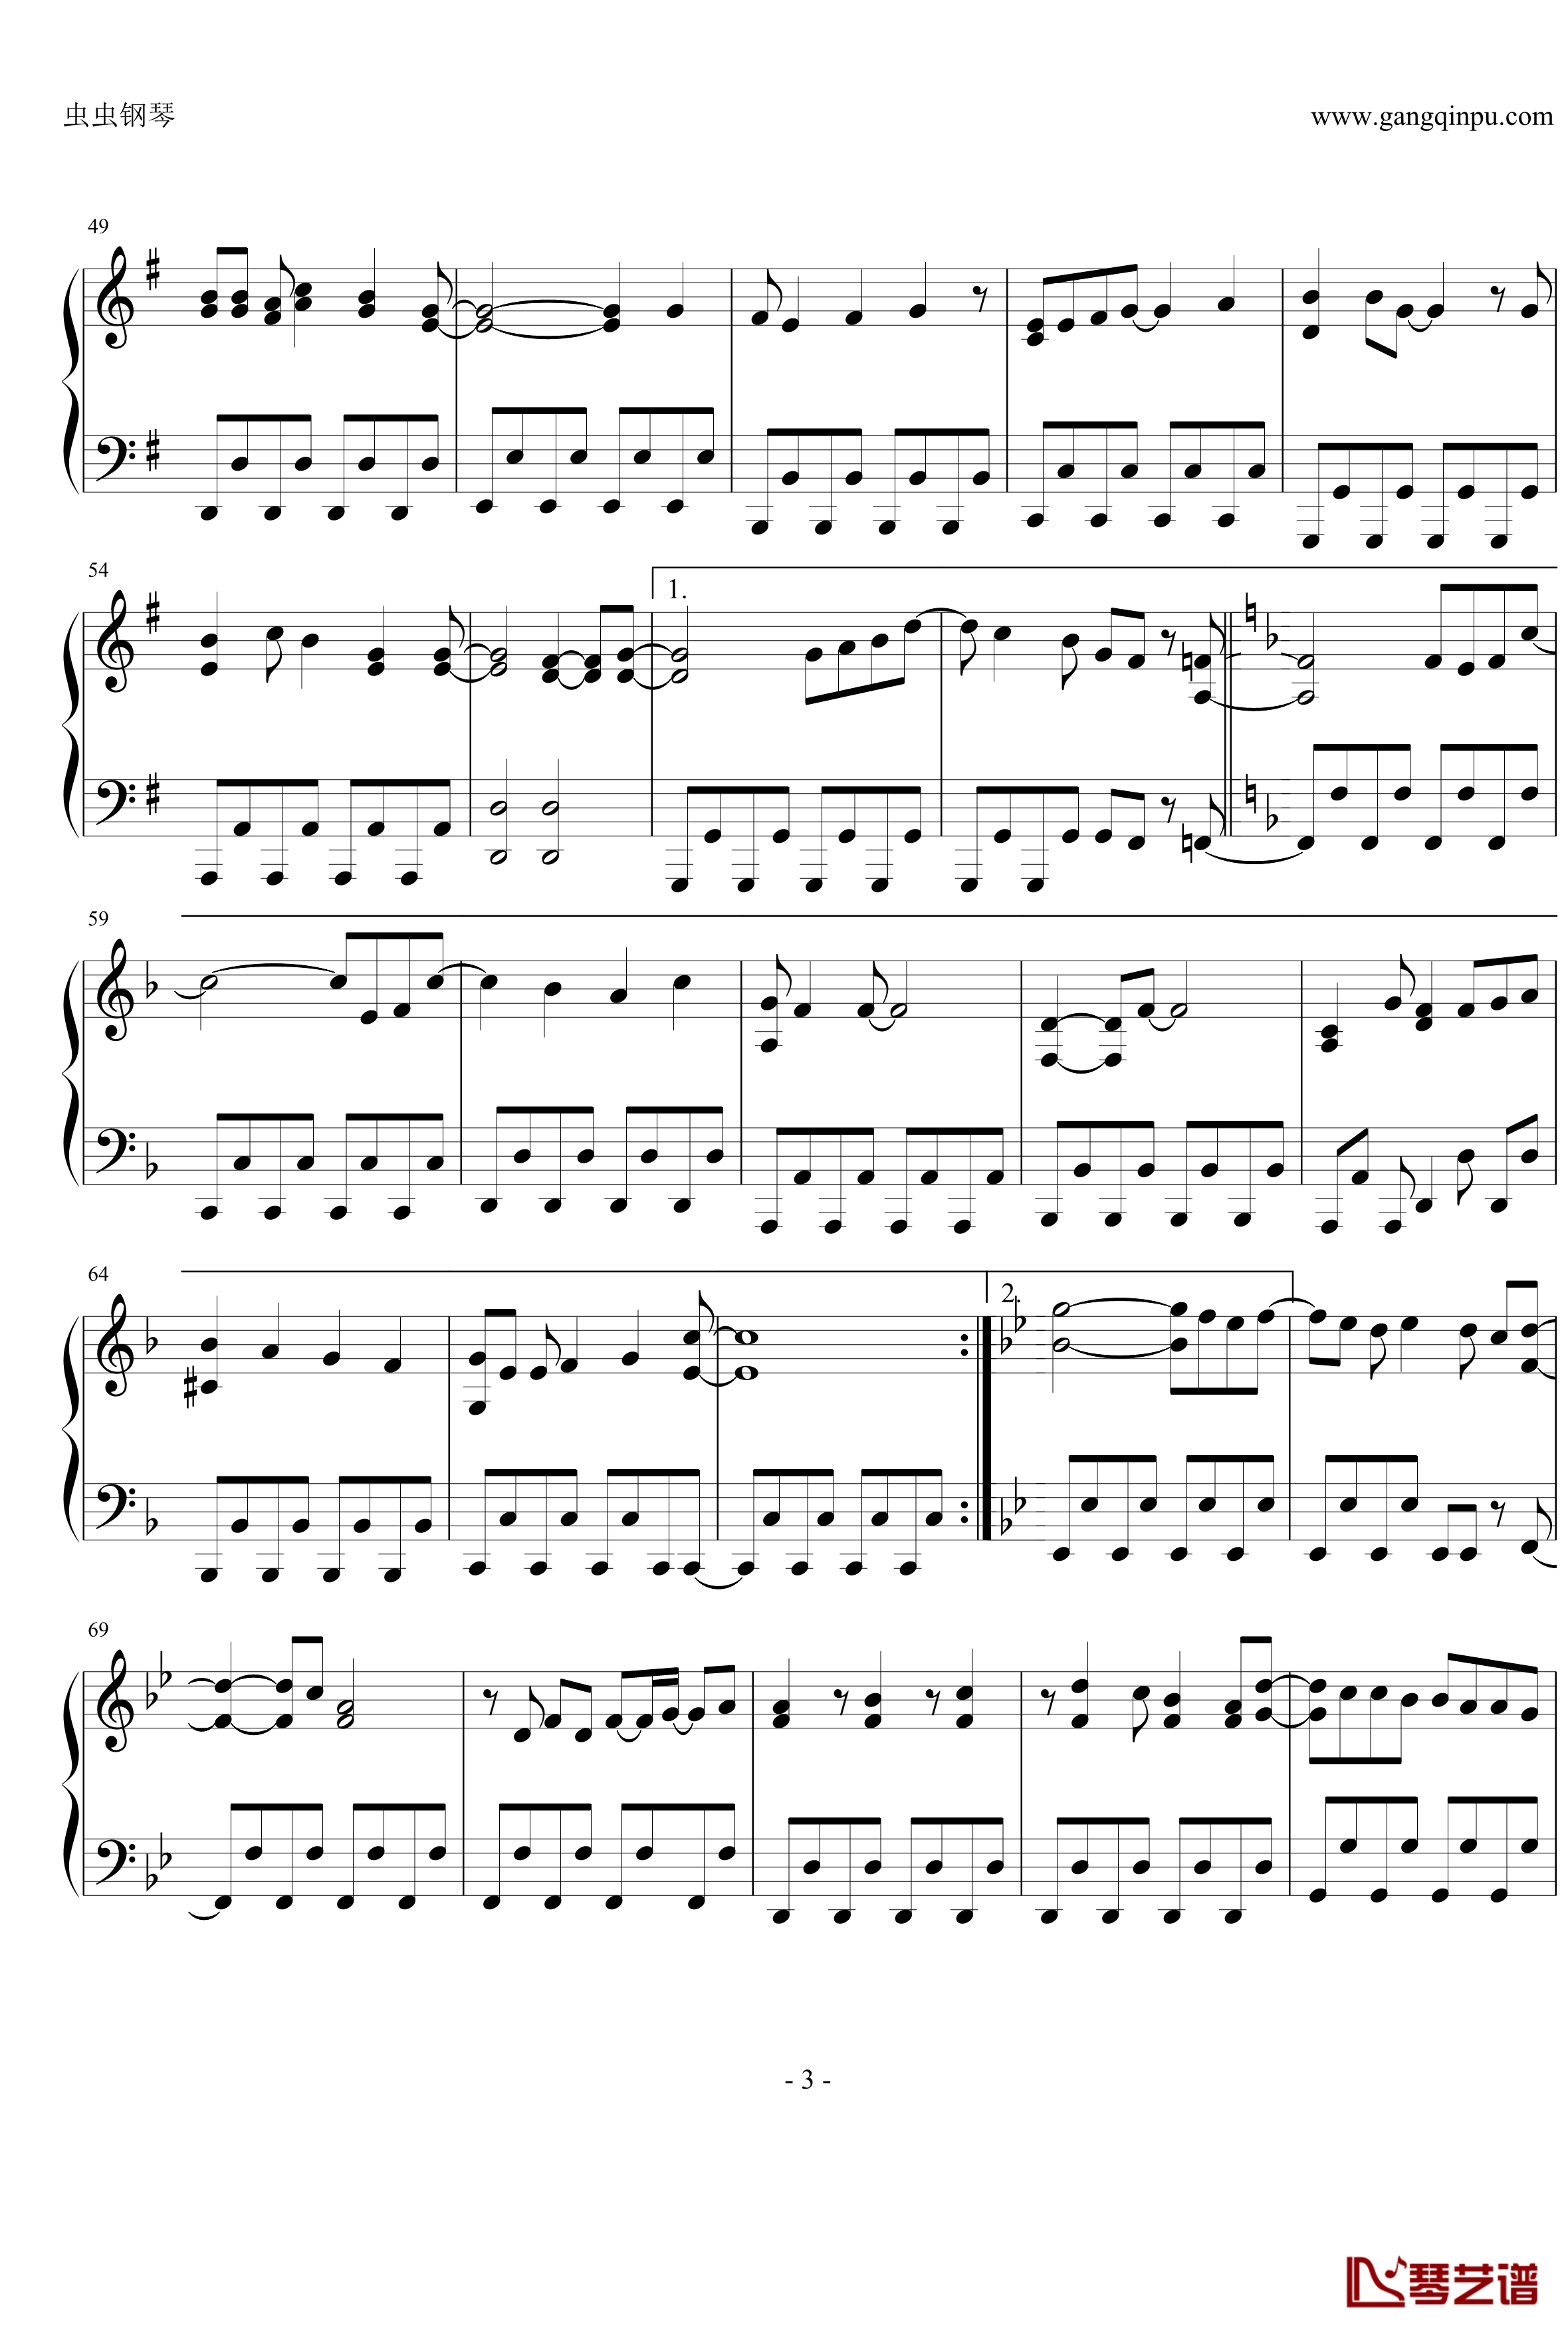 オーマイガー钢琴谱-修订完善版-NMB483